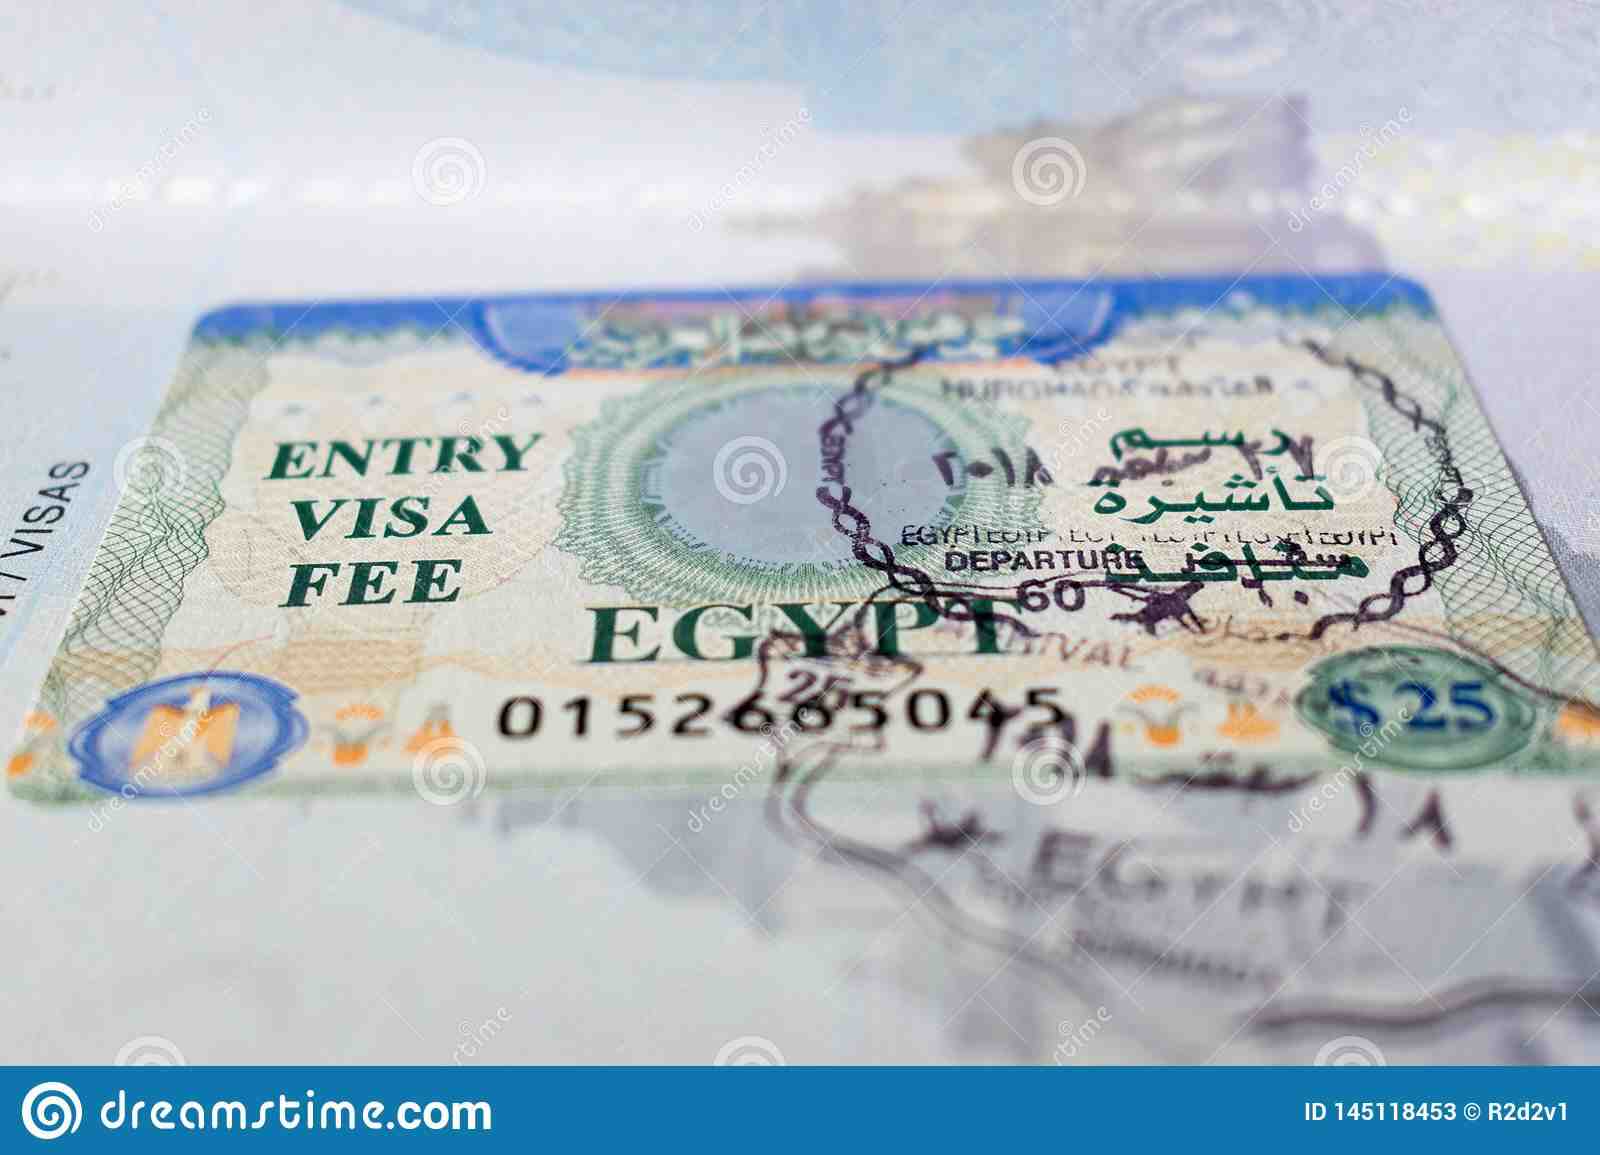 Bagaimana cara mendapatkan visa untuk pergi ke Mesir?